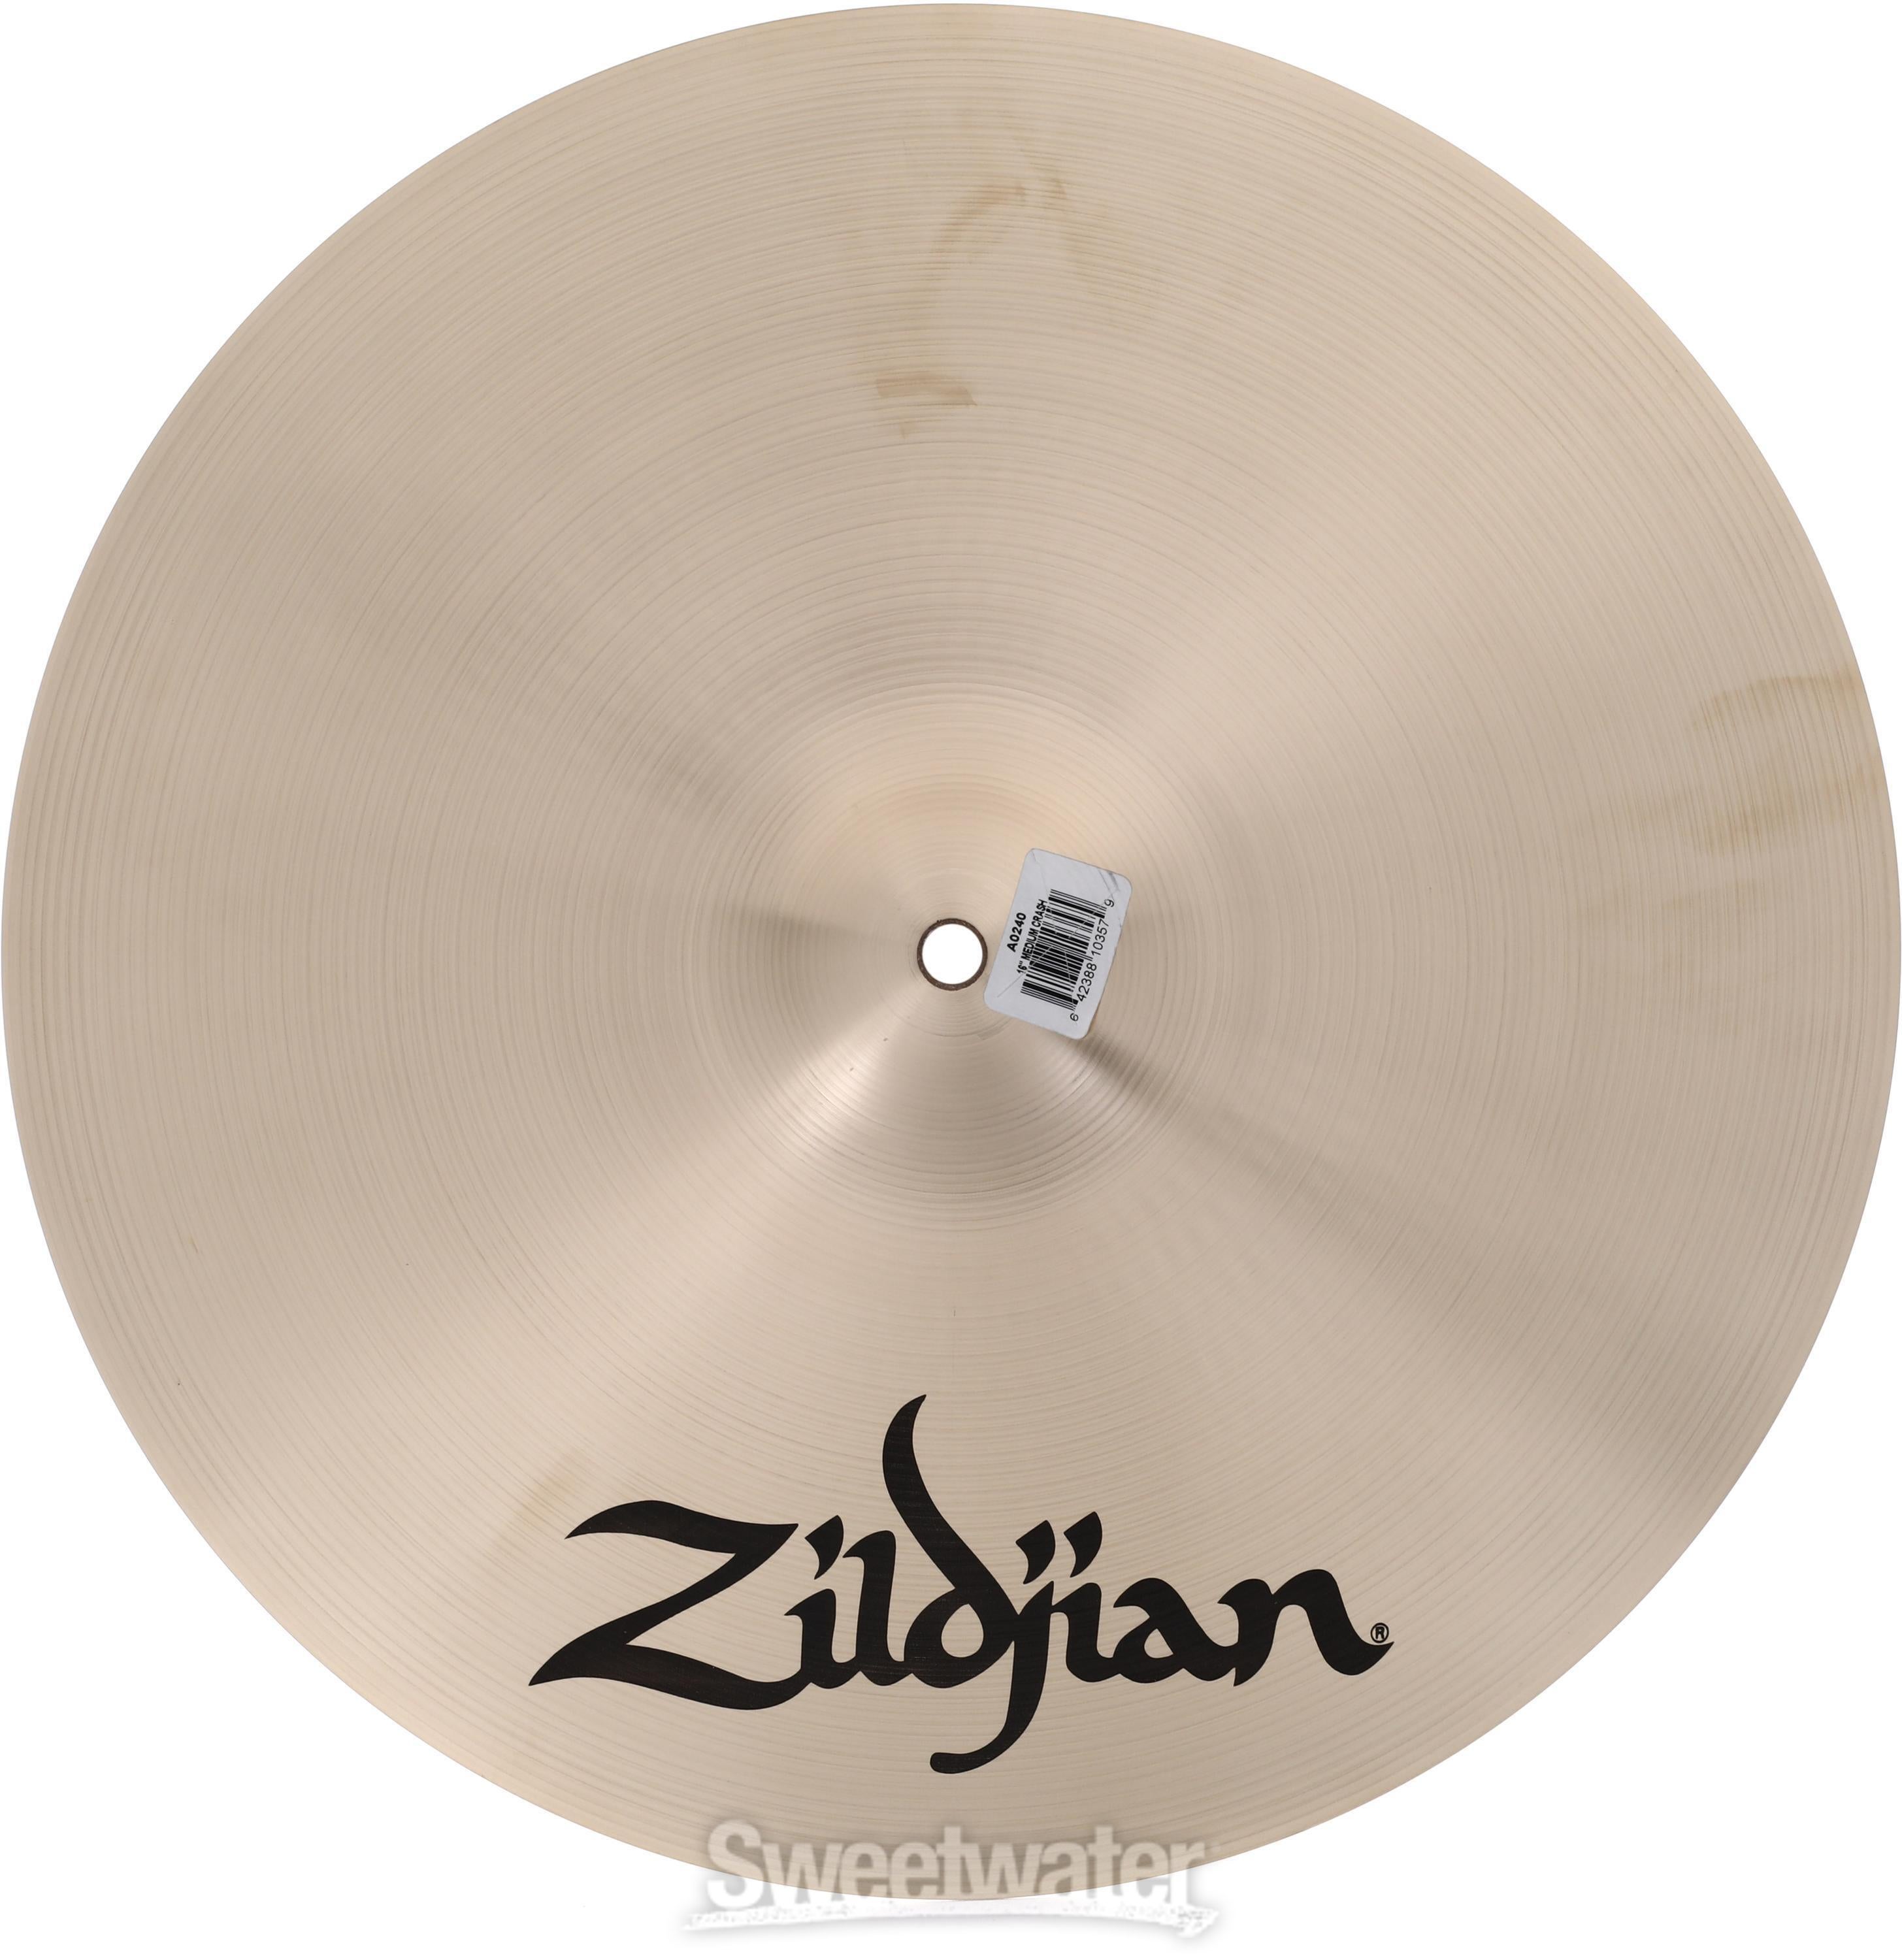 Zildjian 16 inch A Zildjian Medium Crash Cymbal Reviews | Sweetwater